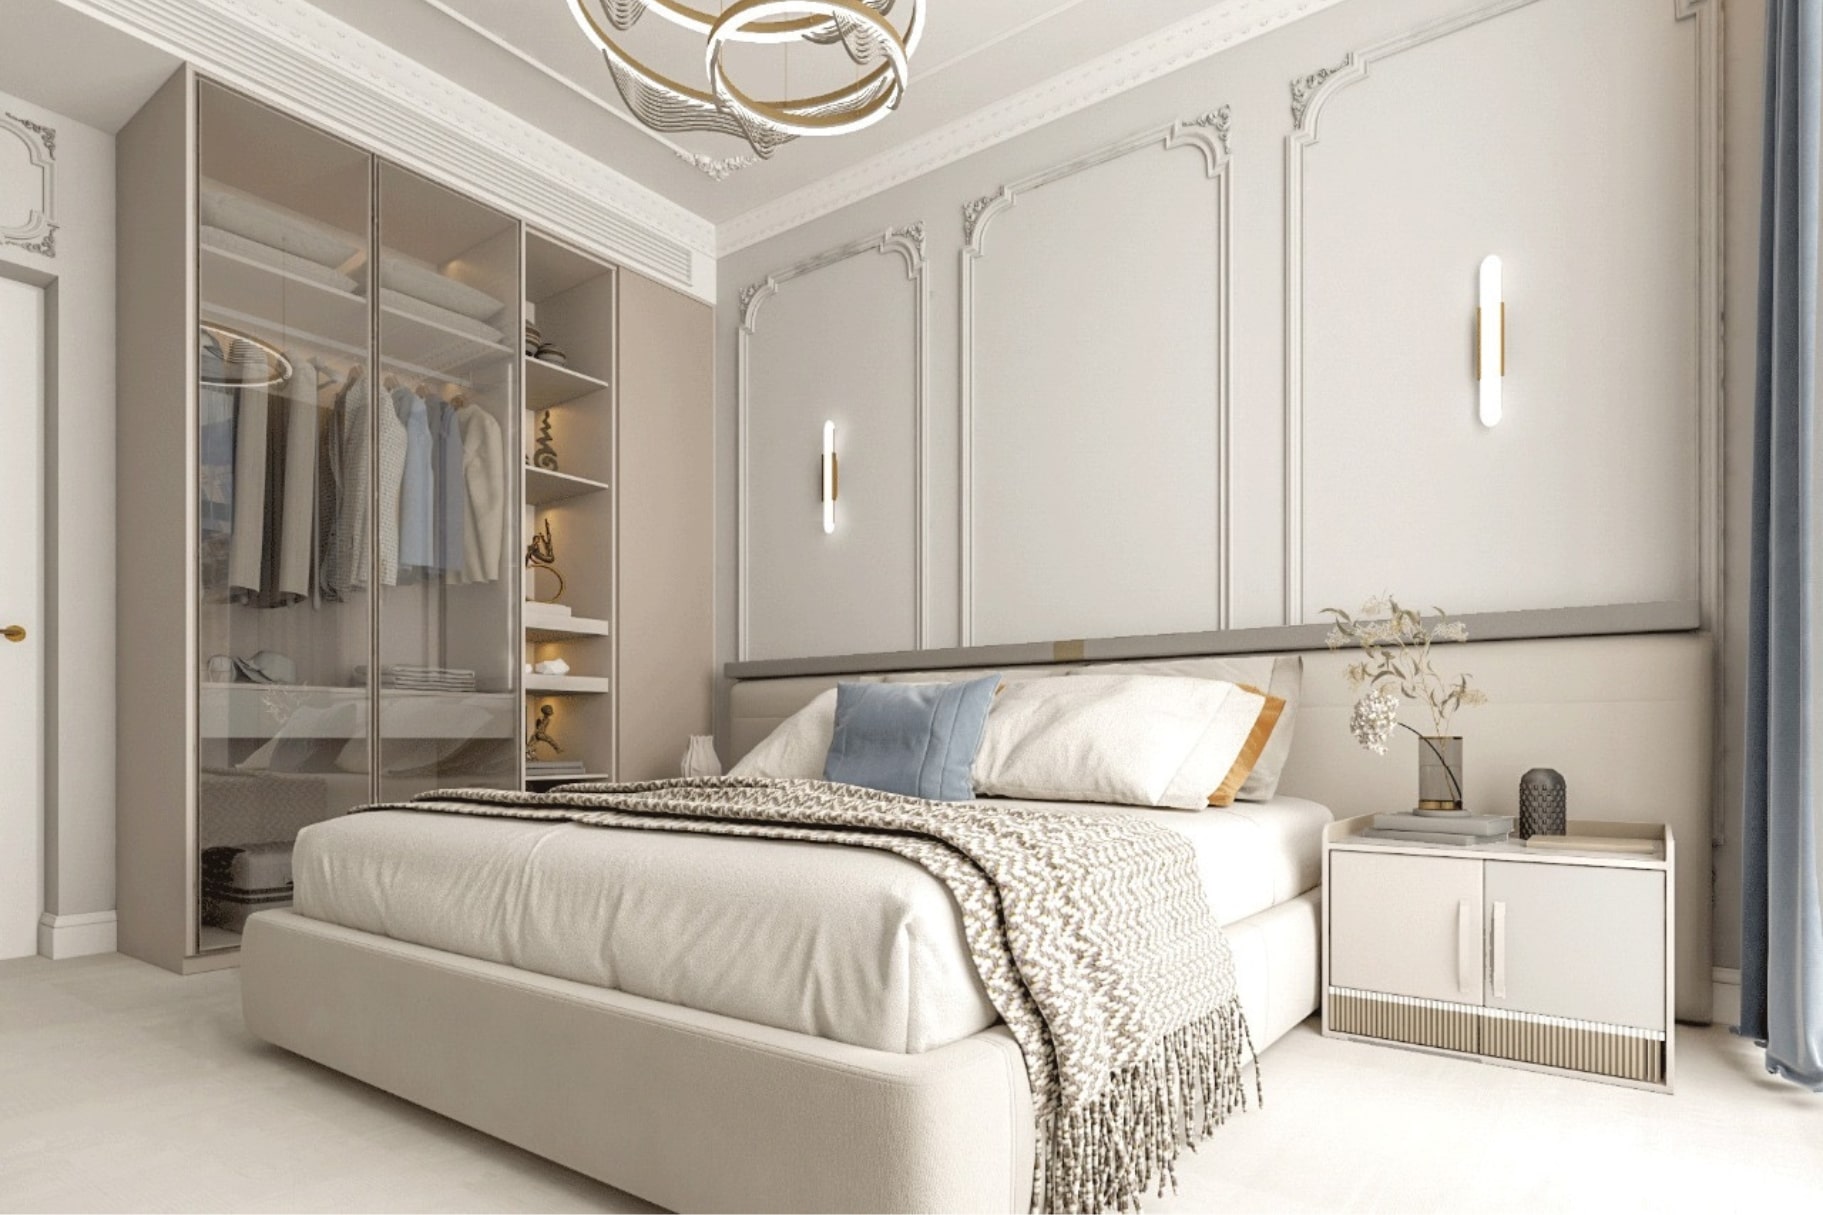 Amenajarea unui dormitor modern in interiorul unei locuinte de lux.